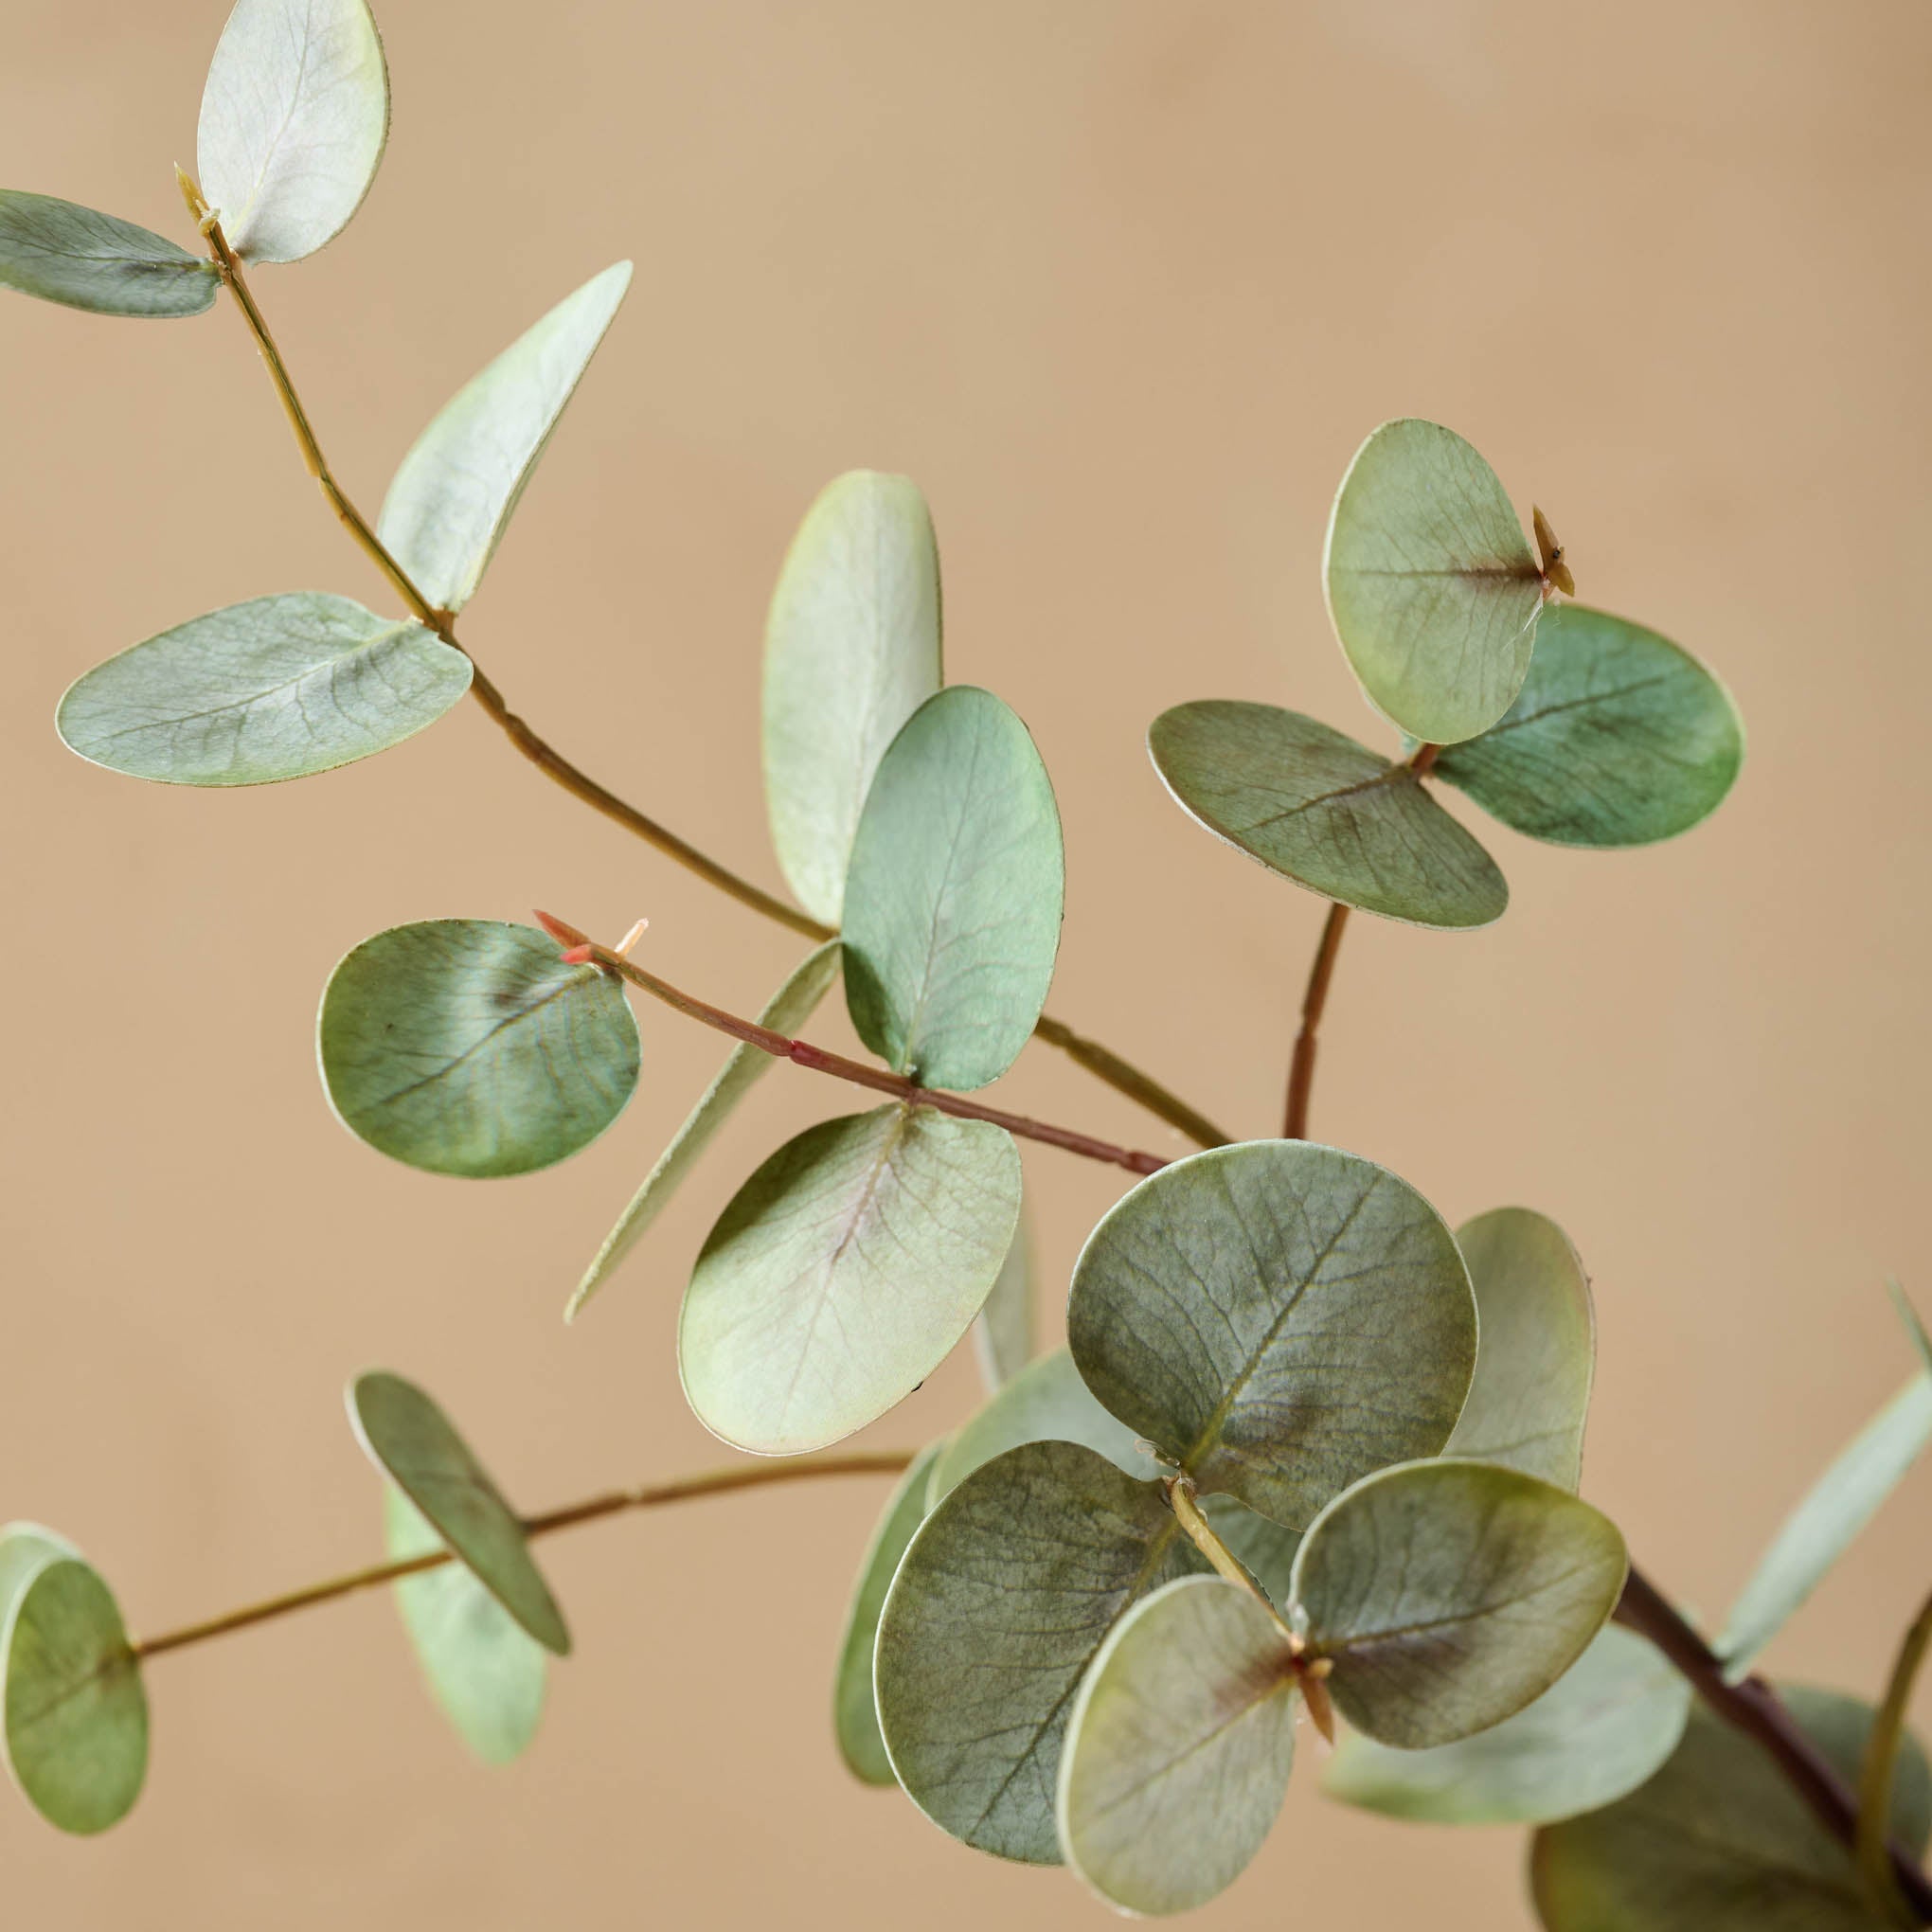 Gumdrop Eucalyptus close up